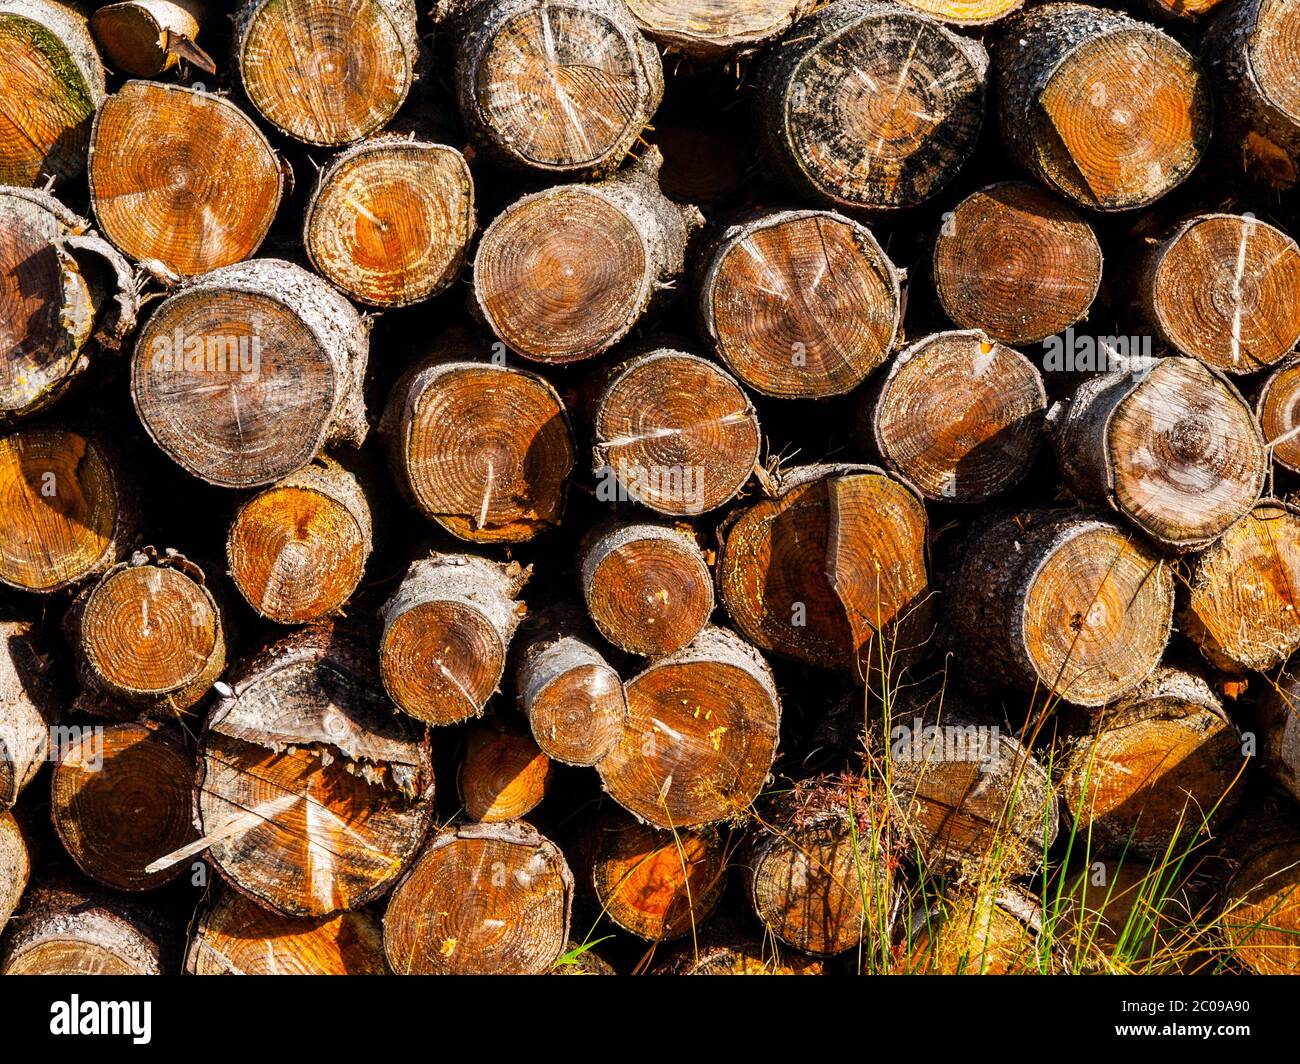 Pila de madera cortada preparada para el invierno Foto de stock